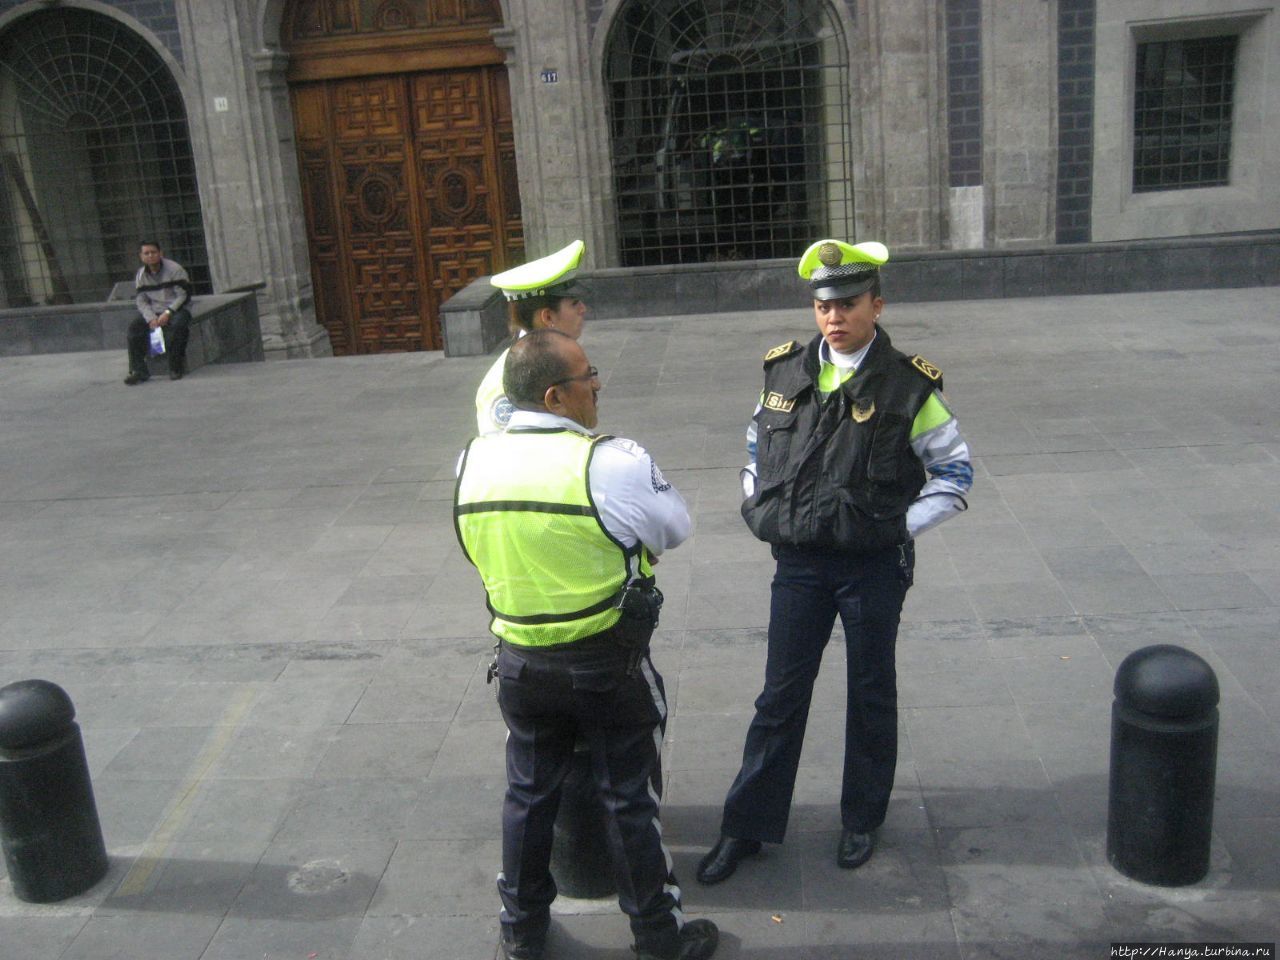 Обилие полиции на улицах Мехико Мехико, Мексика